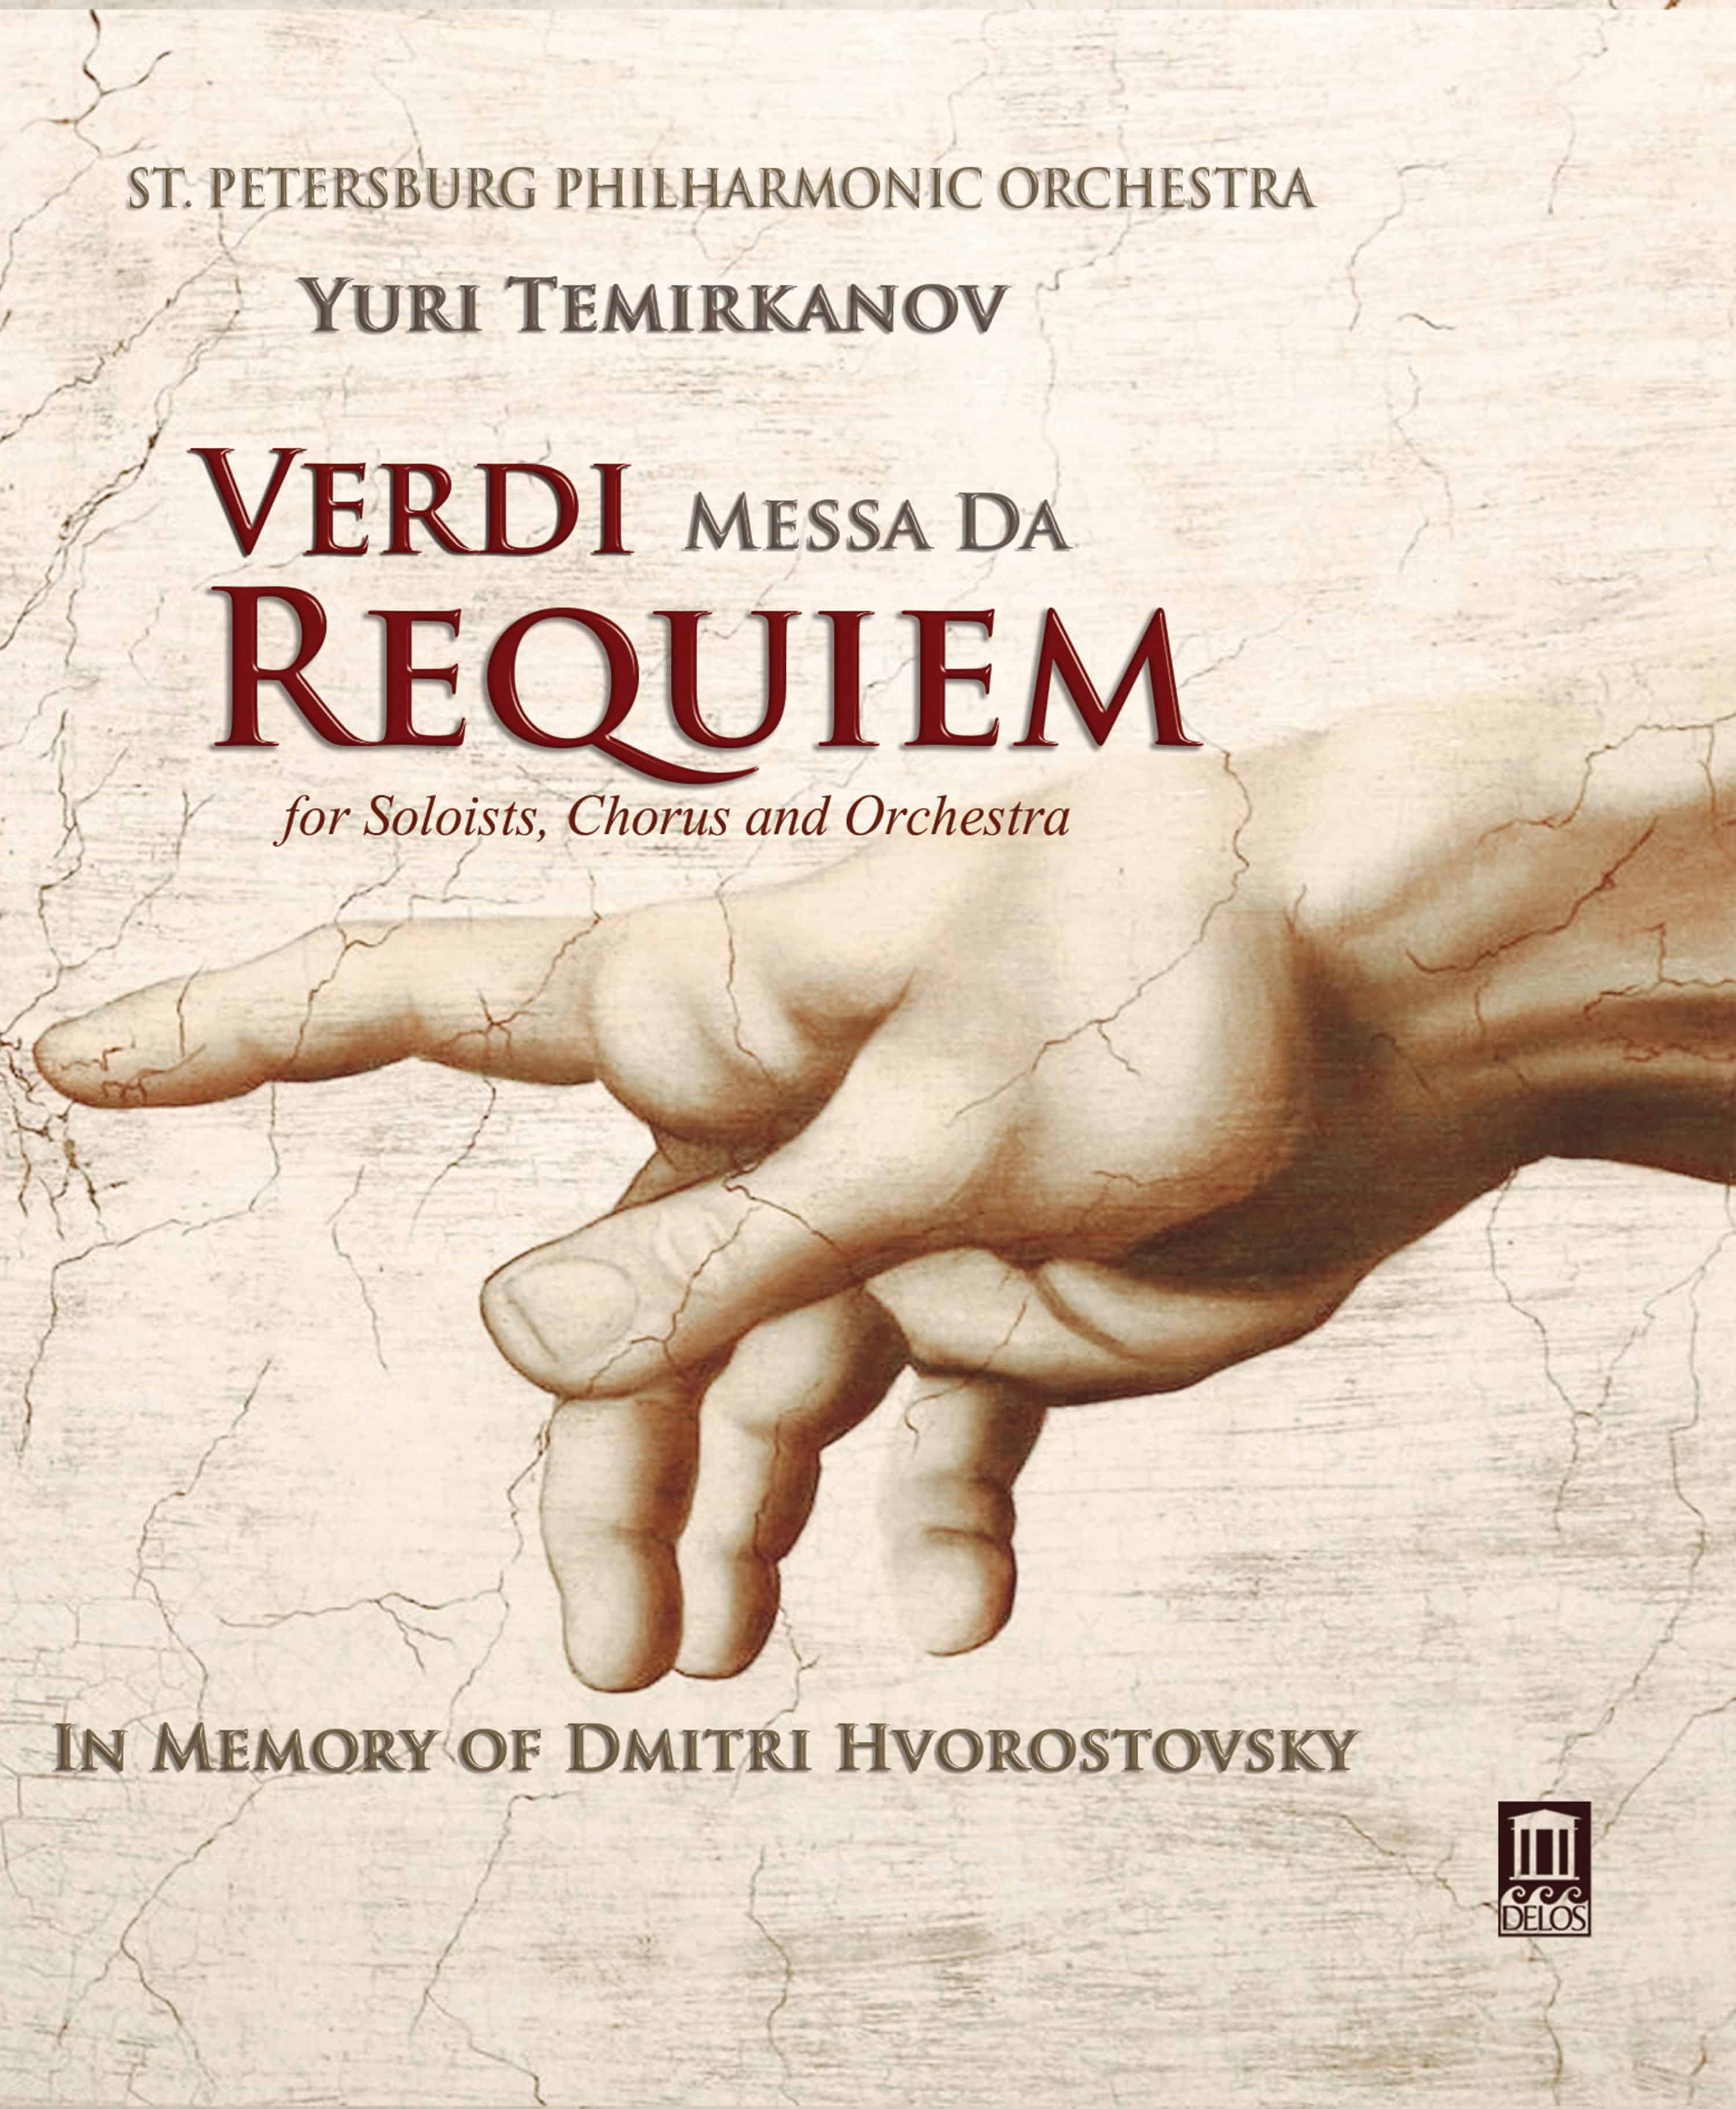 Giuseppe Verdi — Requiem aeternam (from Requiem) cover artwork